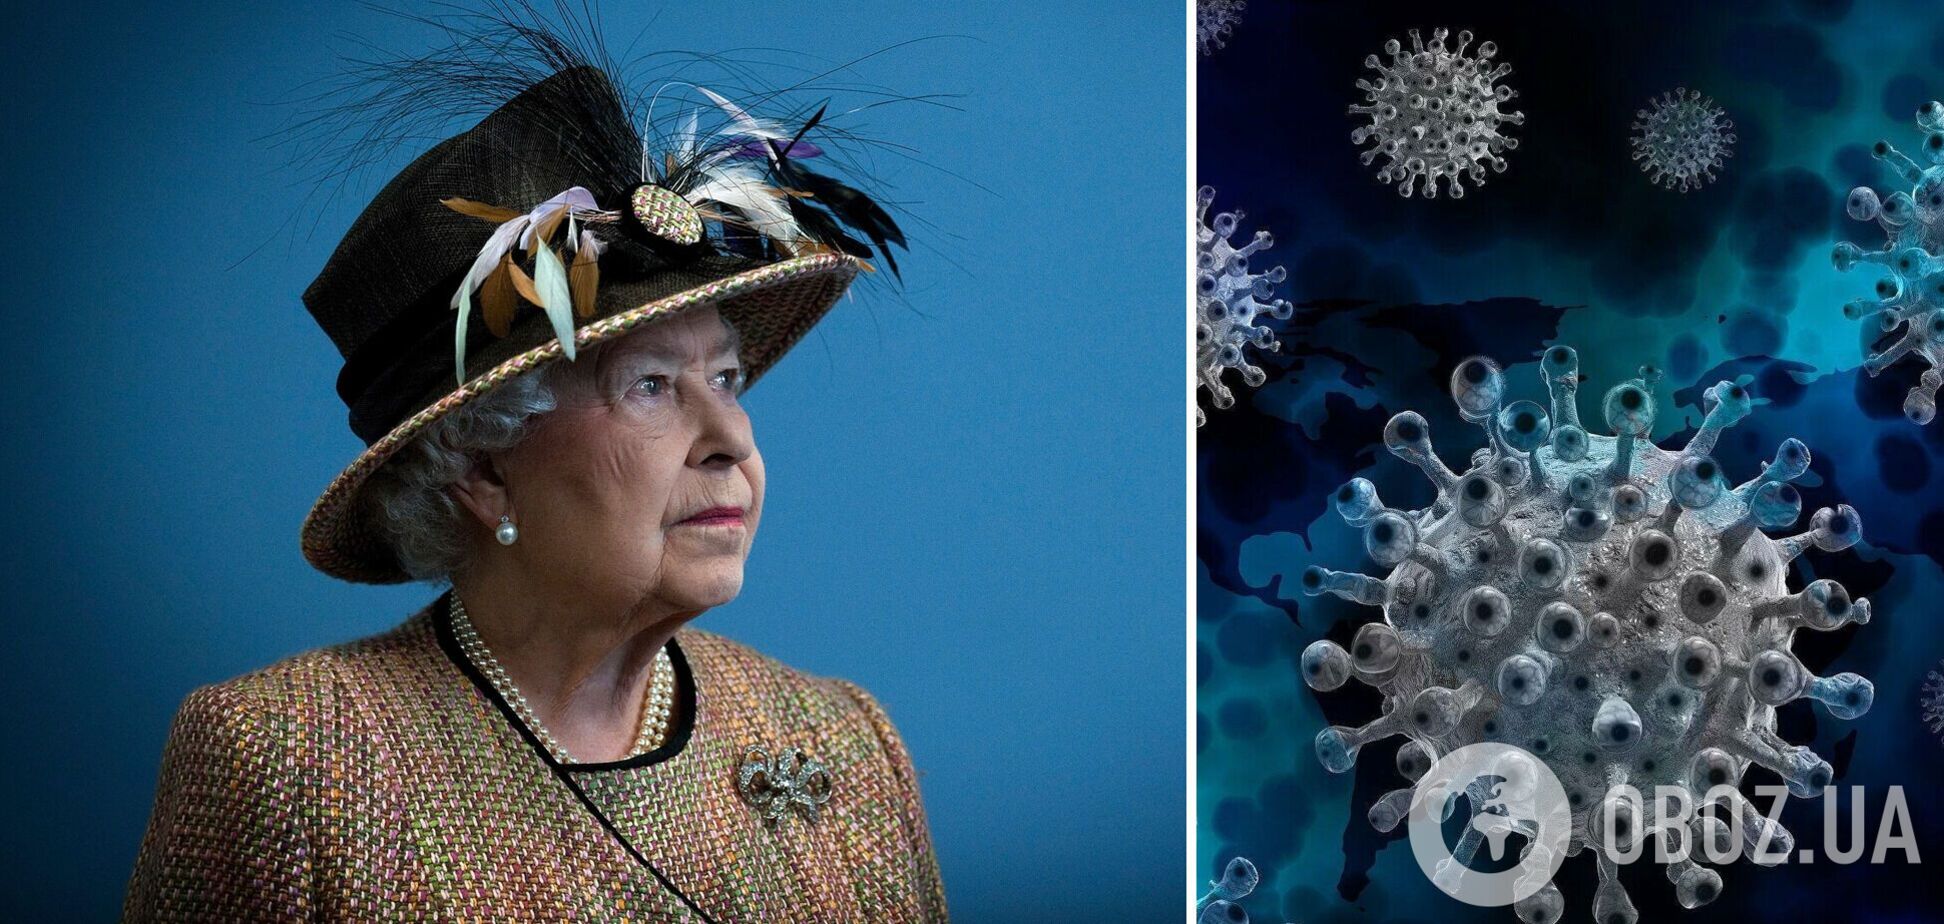 Елизавета II заболела коронавирусом: появились данные о состоянии королевы Великобритании